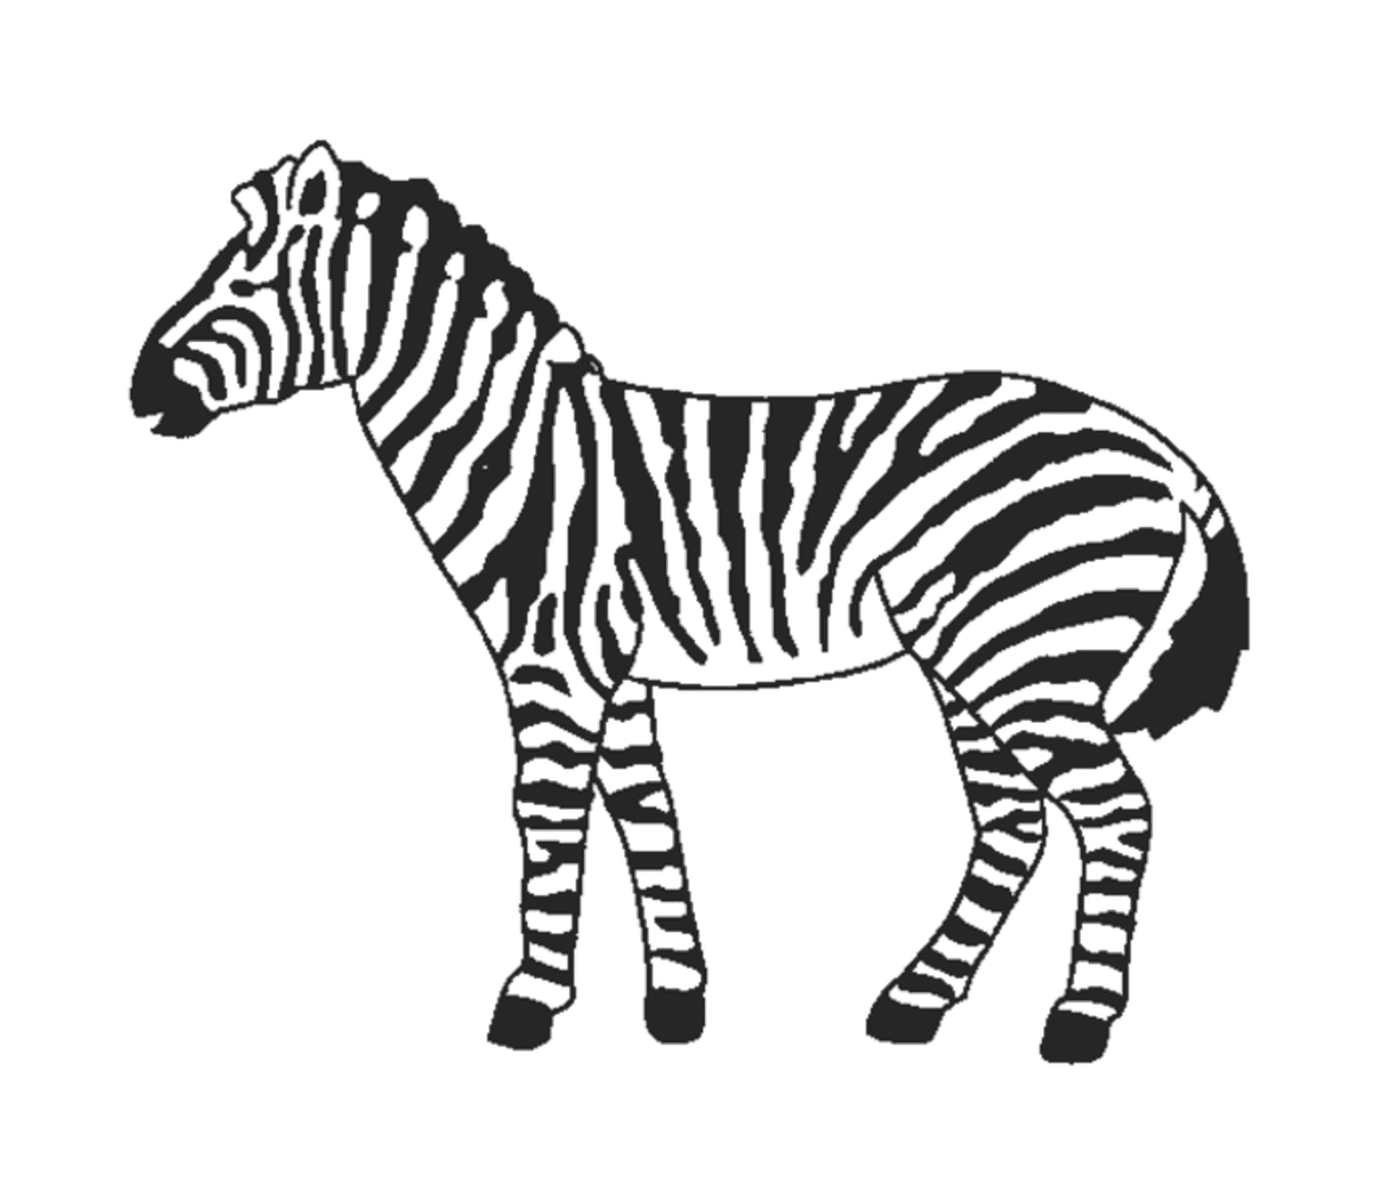  Zebra Graciosa na Natureza 